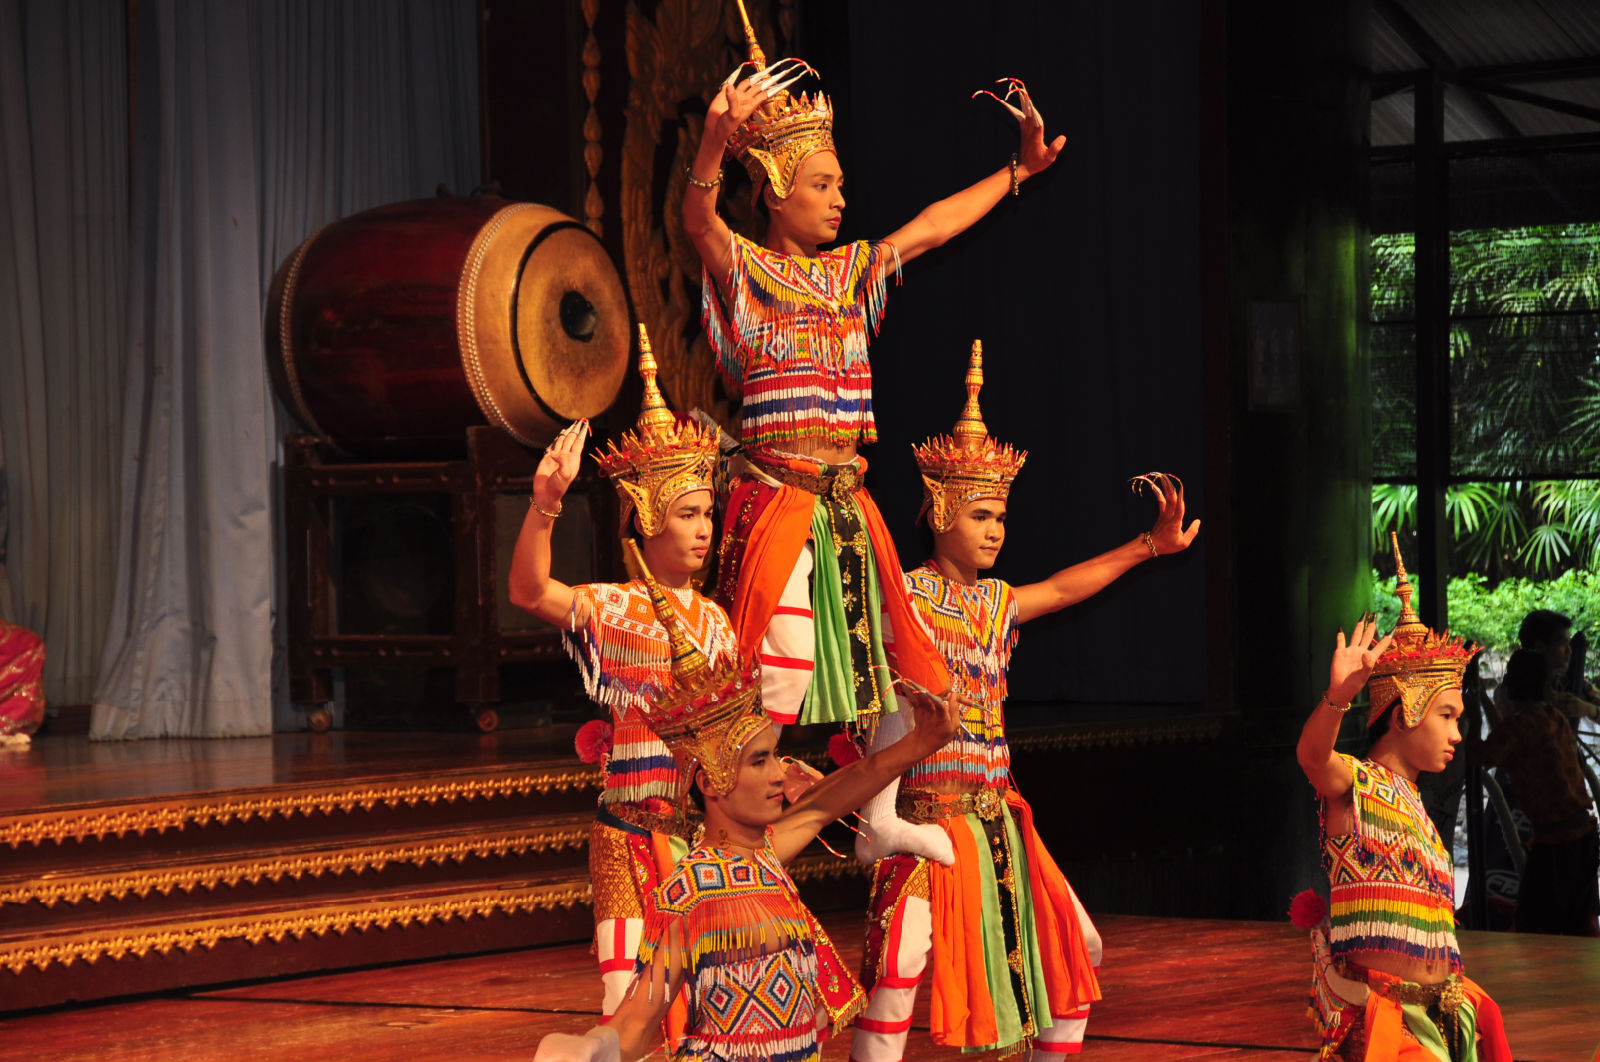 泰国传统舞蹈 编辑类库存图片. 图片 包括有 旅行, 跳舞, 传统, 游人, 衣裳, 显示, 兰娜, 旅游业 - 41179259